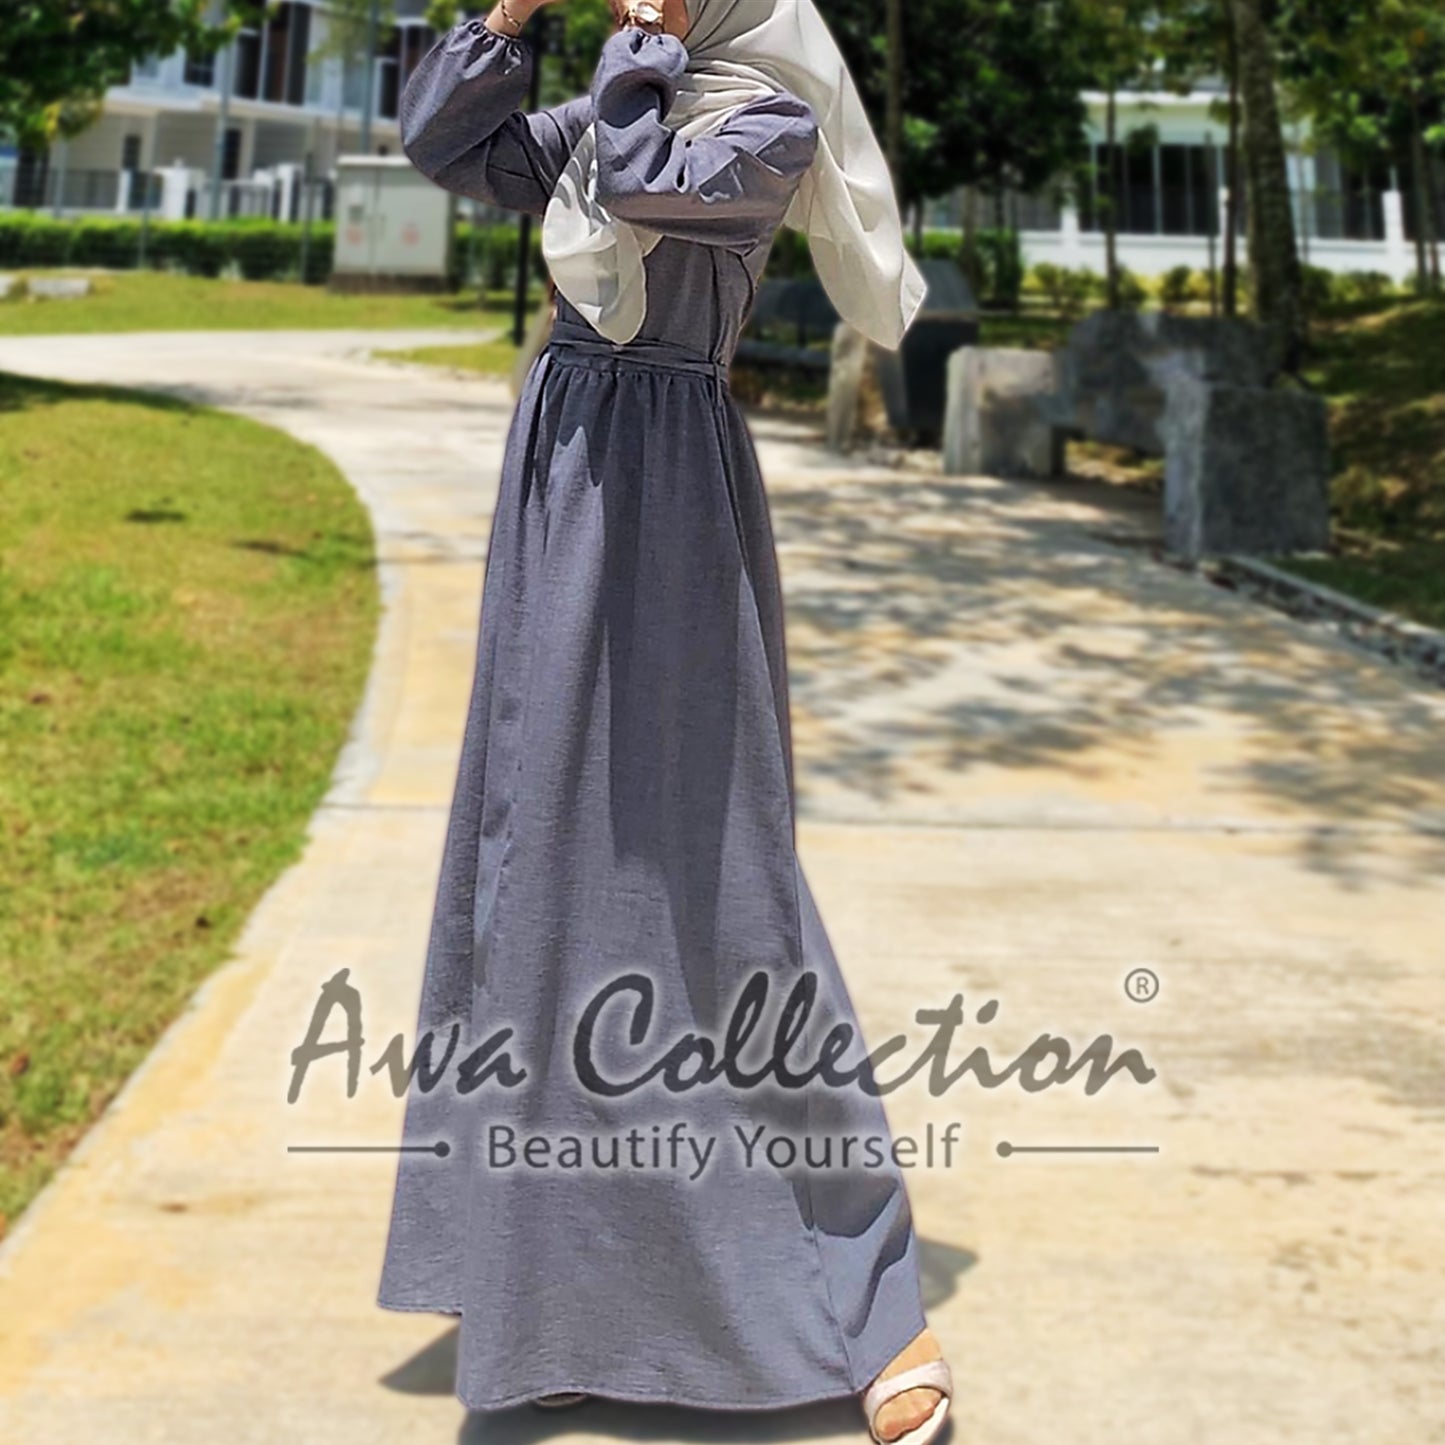 LALEESA Awa Collection DA103127 DRESS MARIA Button Front Frilled Neckline Belted Dress Muslimah Dress Women Dress